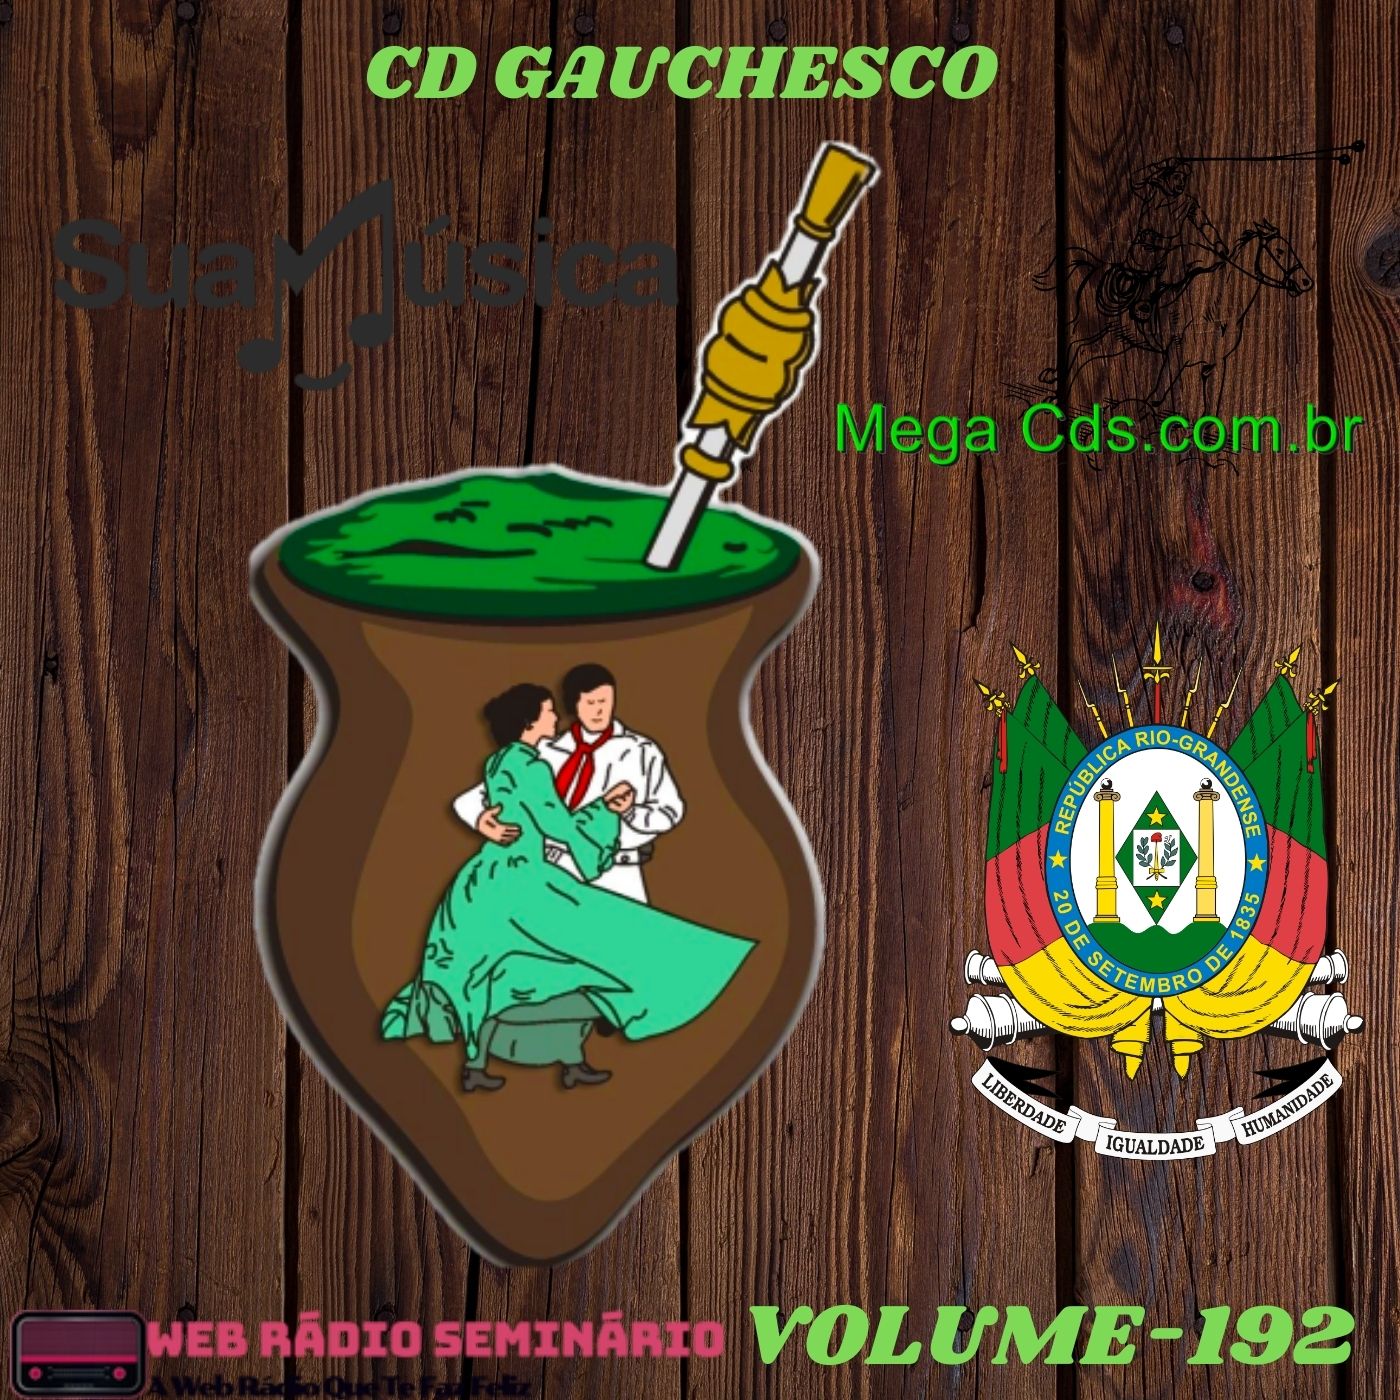 CD GAÚCHESCO VOLUME 192